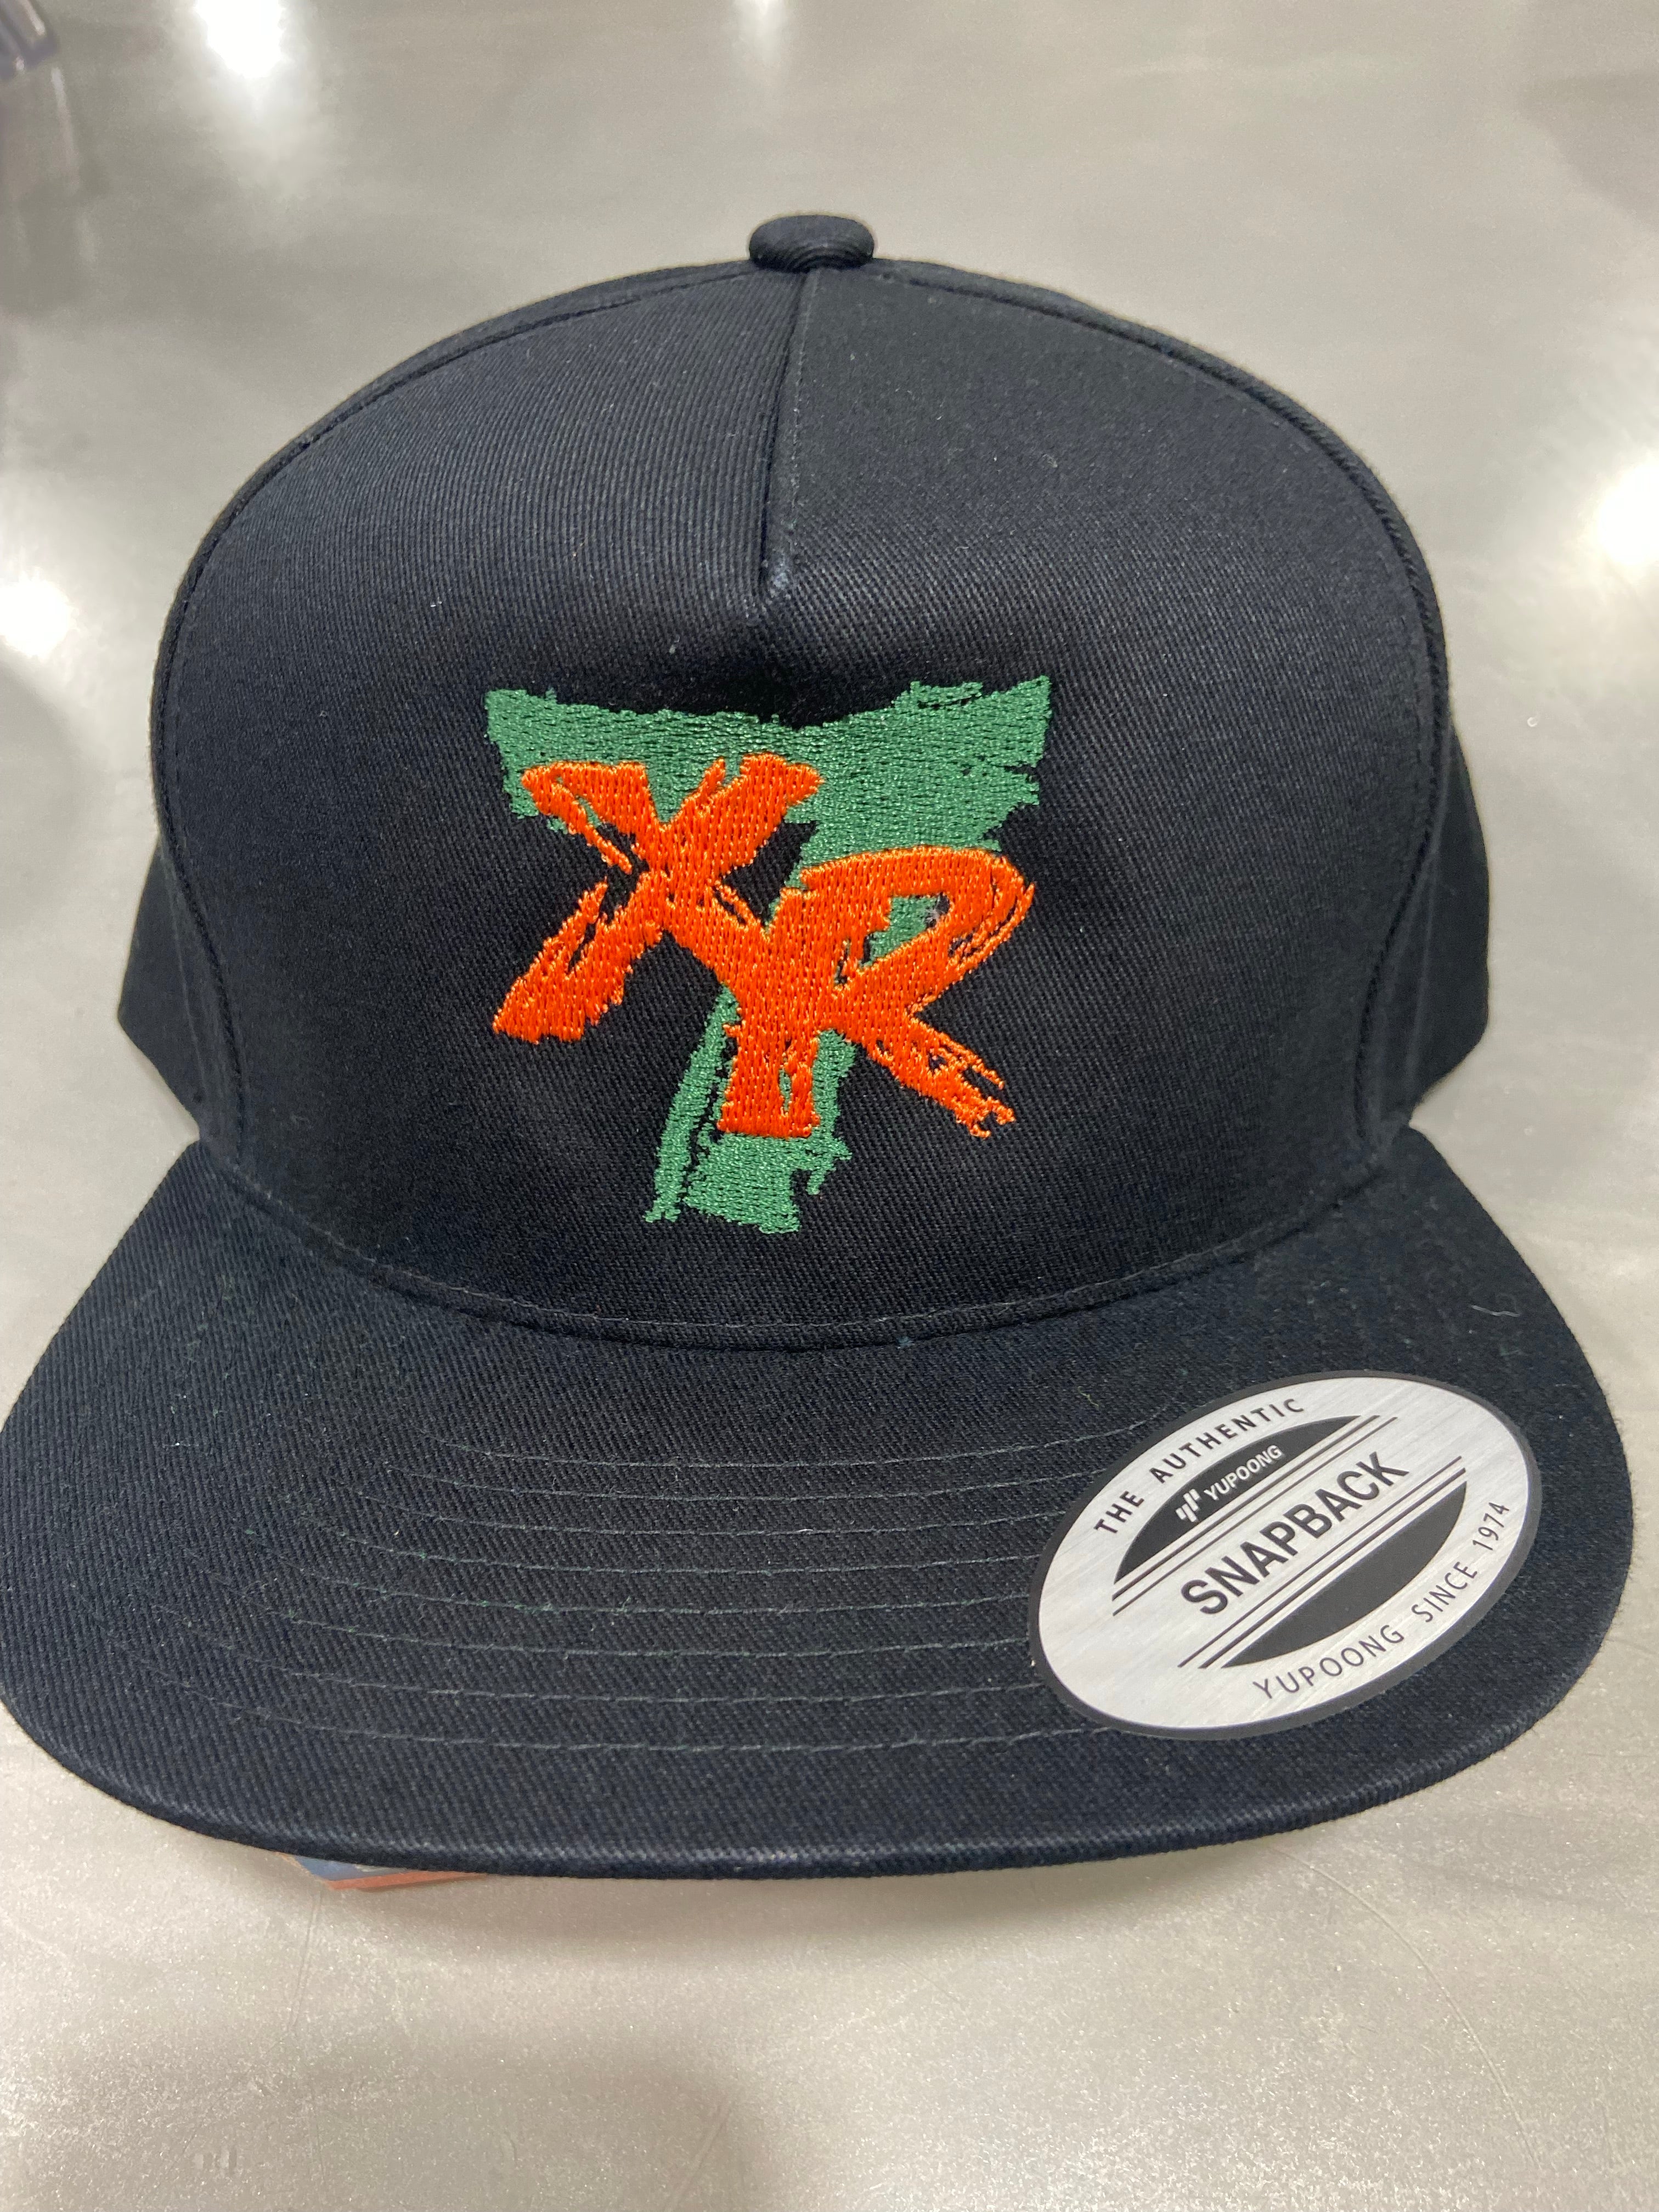 Xavier Restrepo XR7 Flat Bill Snap Back Hat - Black